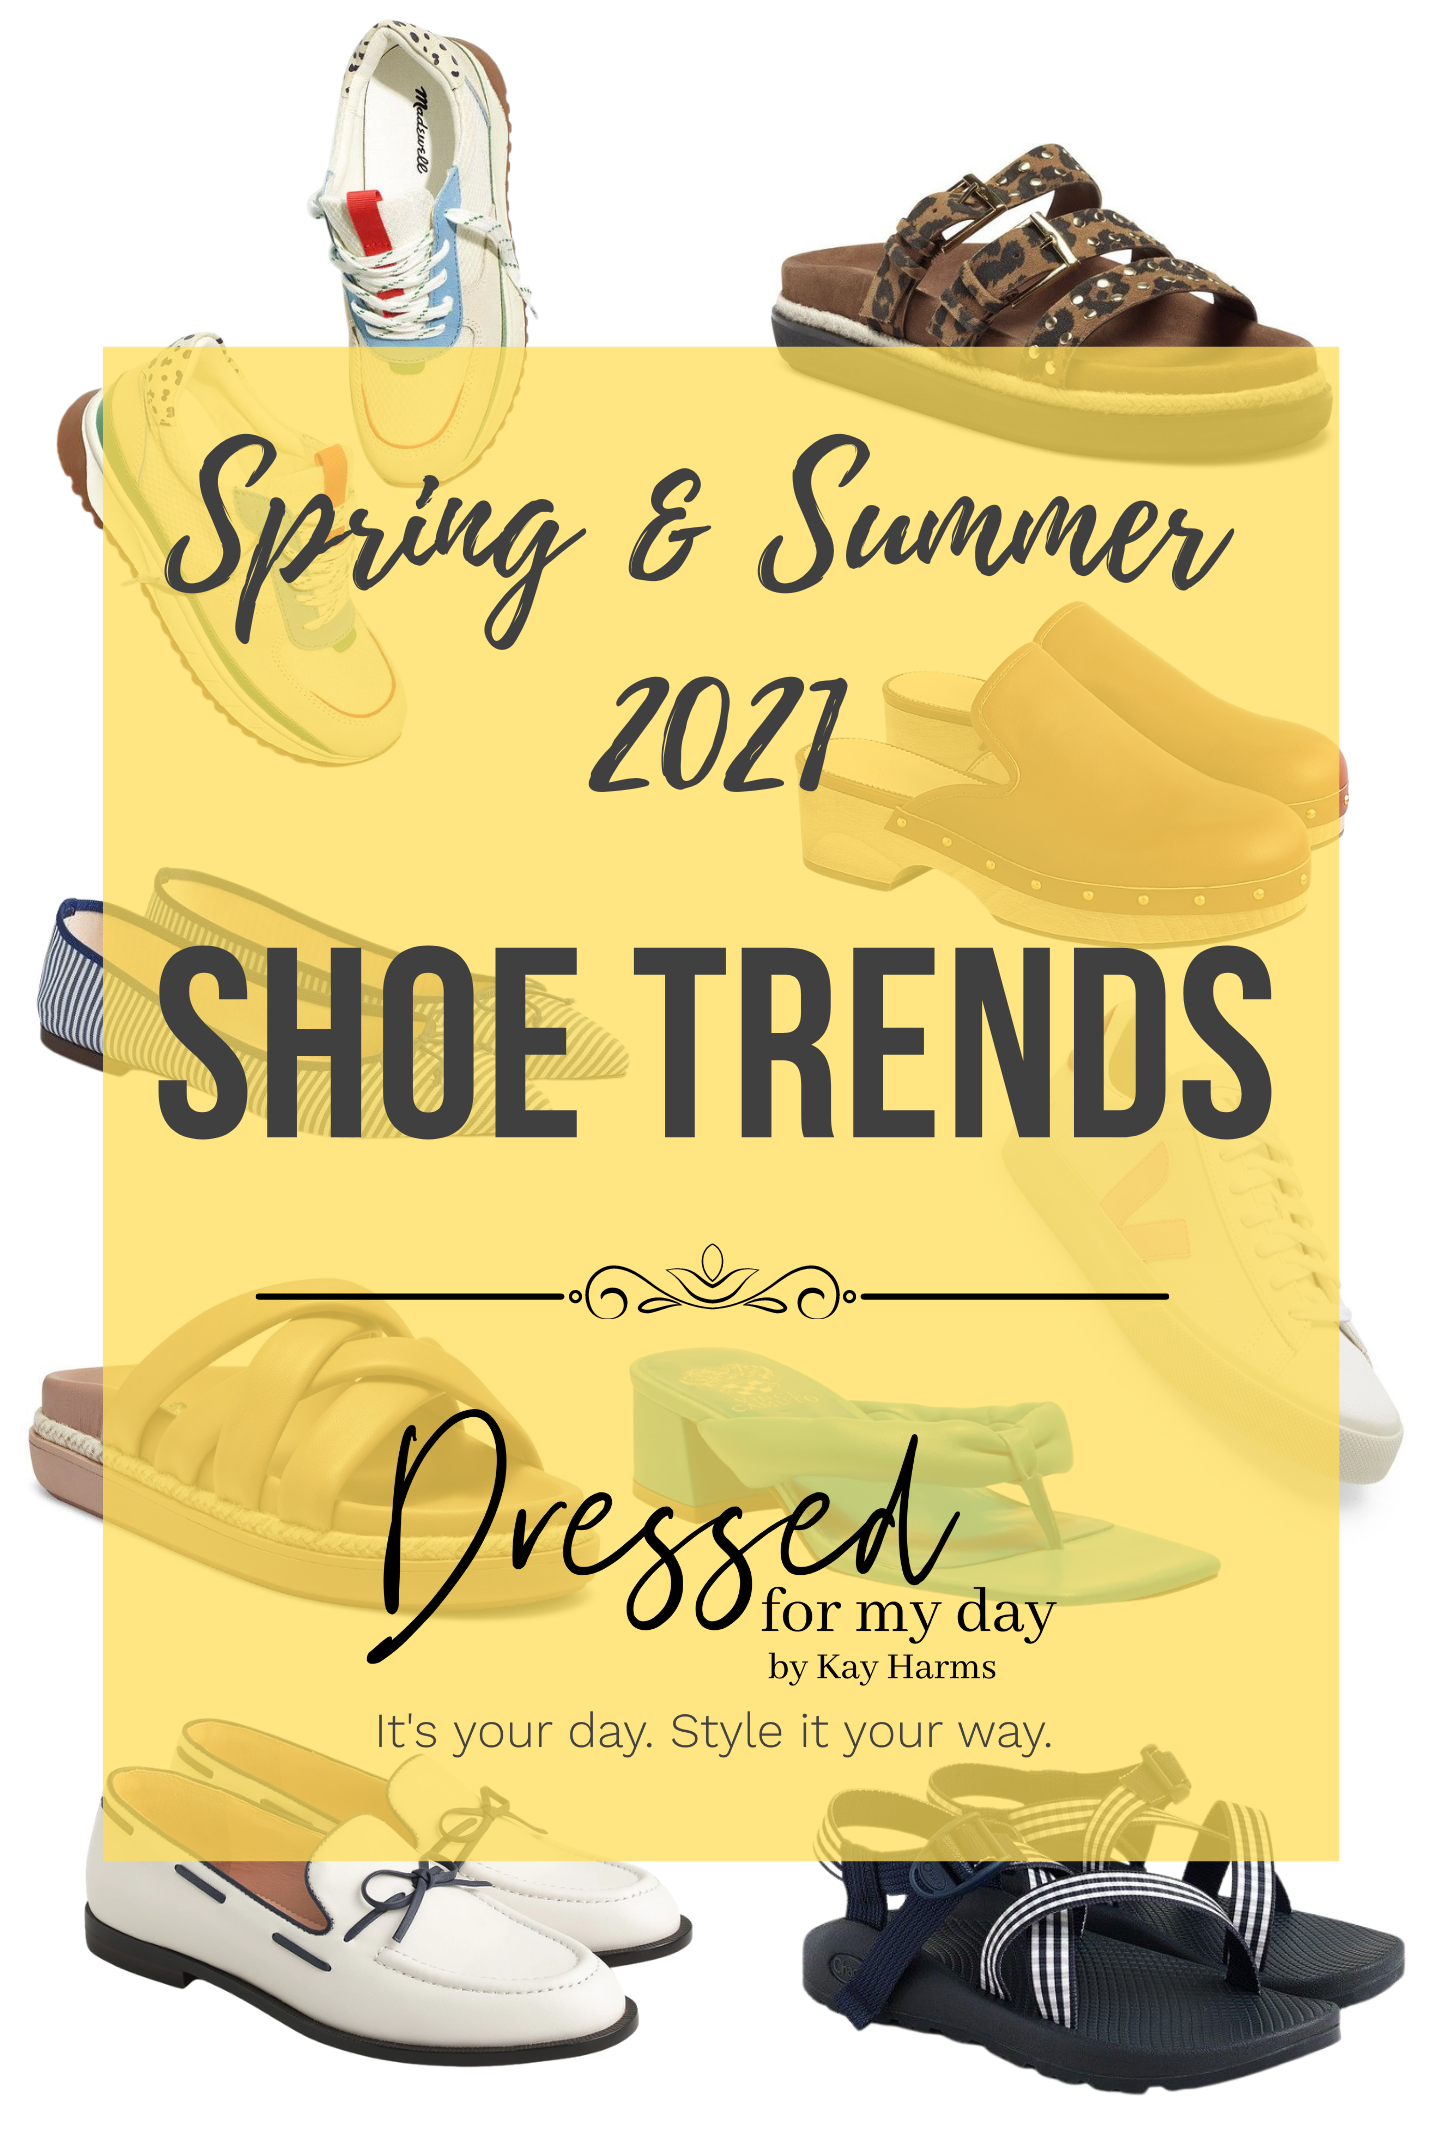 Spring & Summer 2021 Shoe Trends